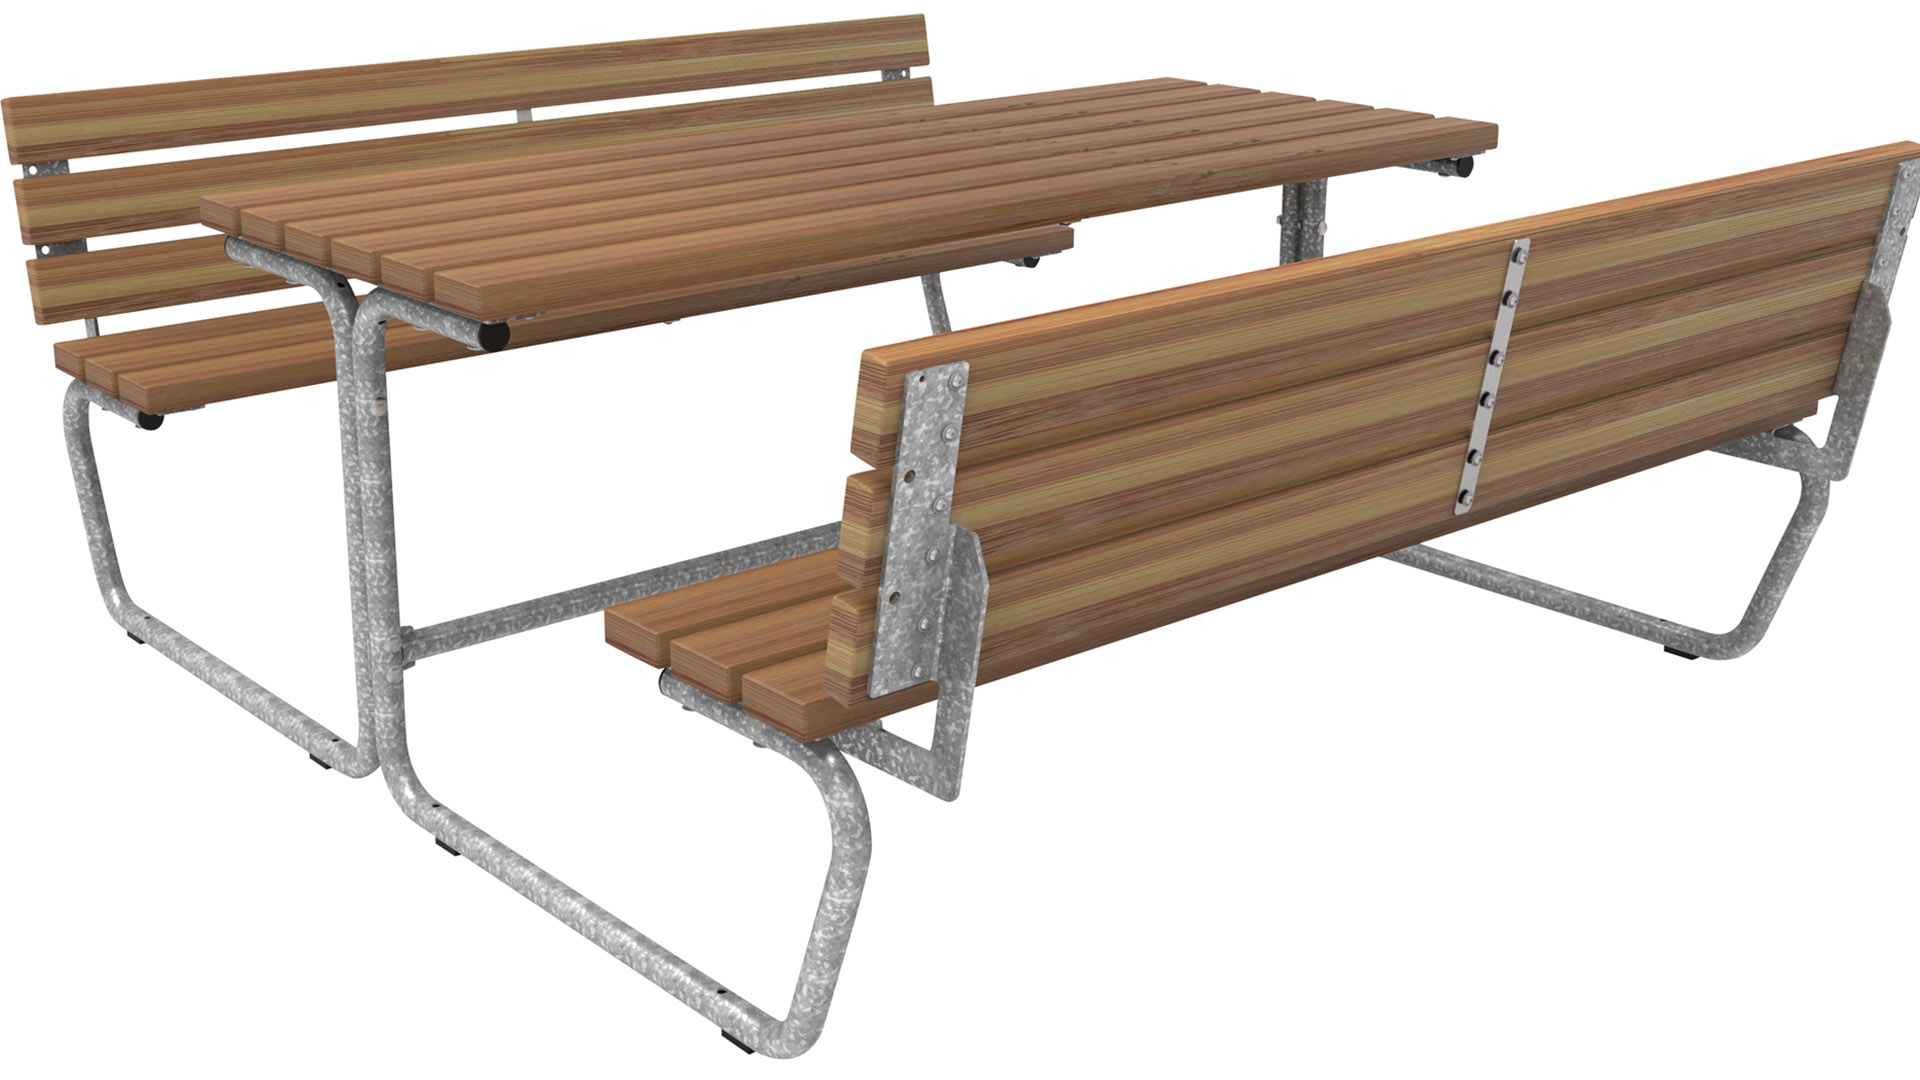 Sitzgarnitur, bestehend aus: 2 Bänke, Sitzfläche Bambus mit Rückenlehne, 1 Tisch , Tischläche aus Bambus Savanna, BxTxH 1770x2101x785 mm